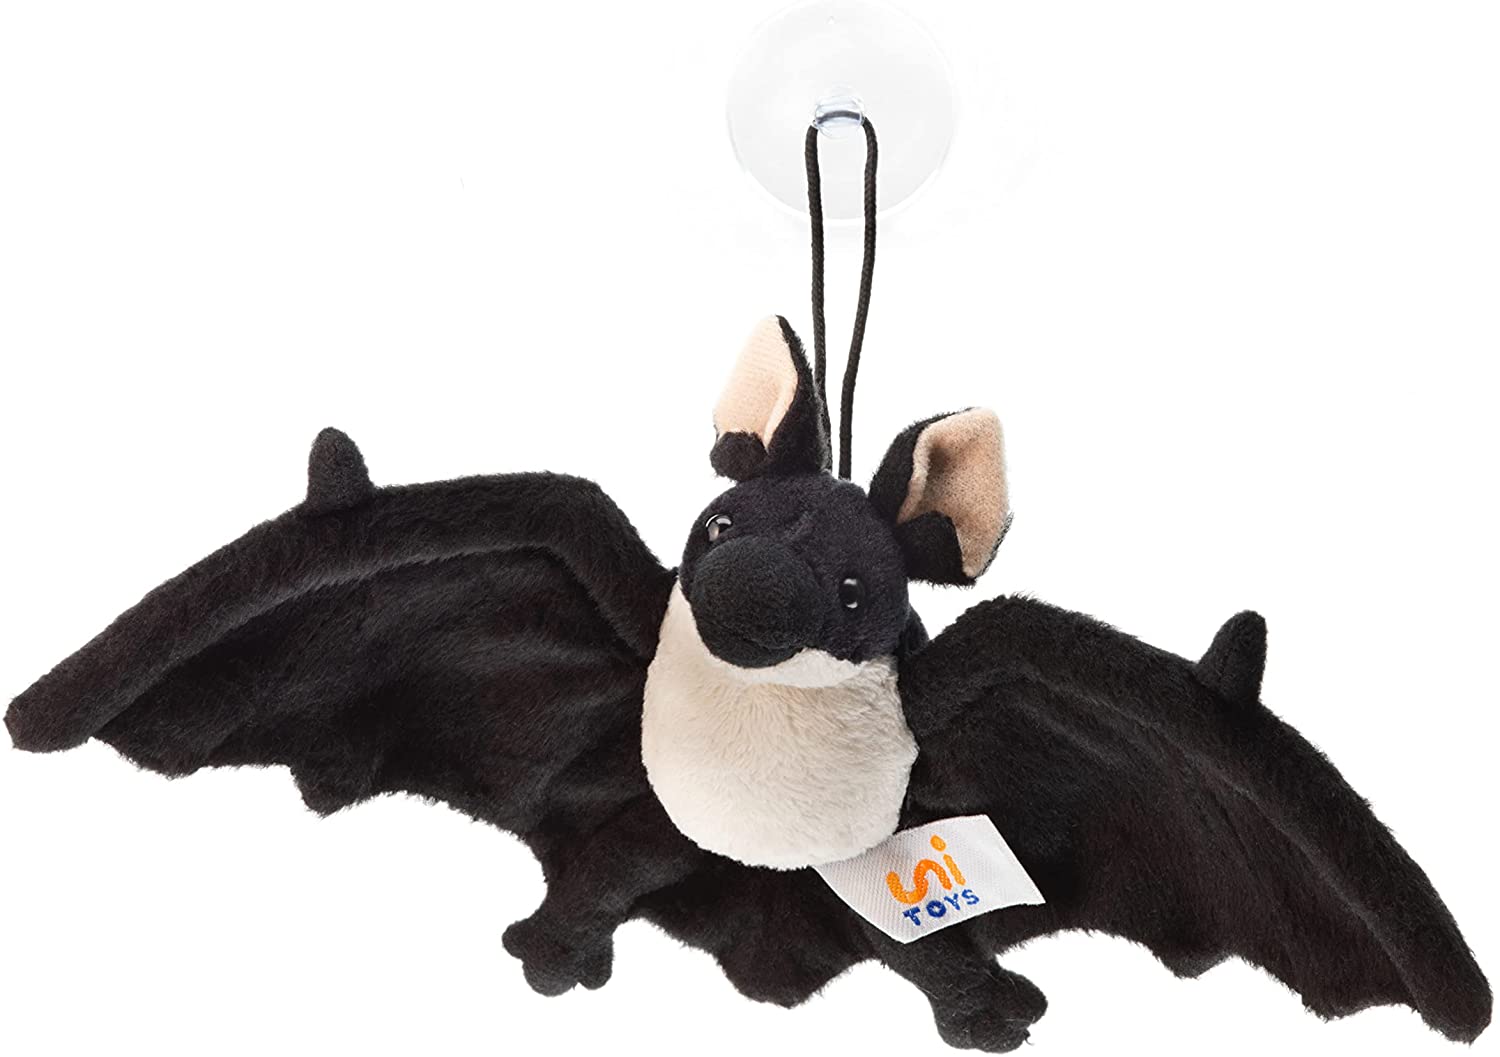 Uni-Toys - Fledermaus, schwarz klein Saugnapf - 23 cm (Breite) - Plüschtier, Kuscheltier 